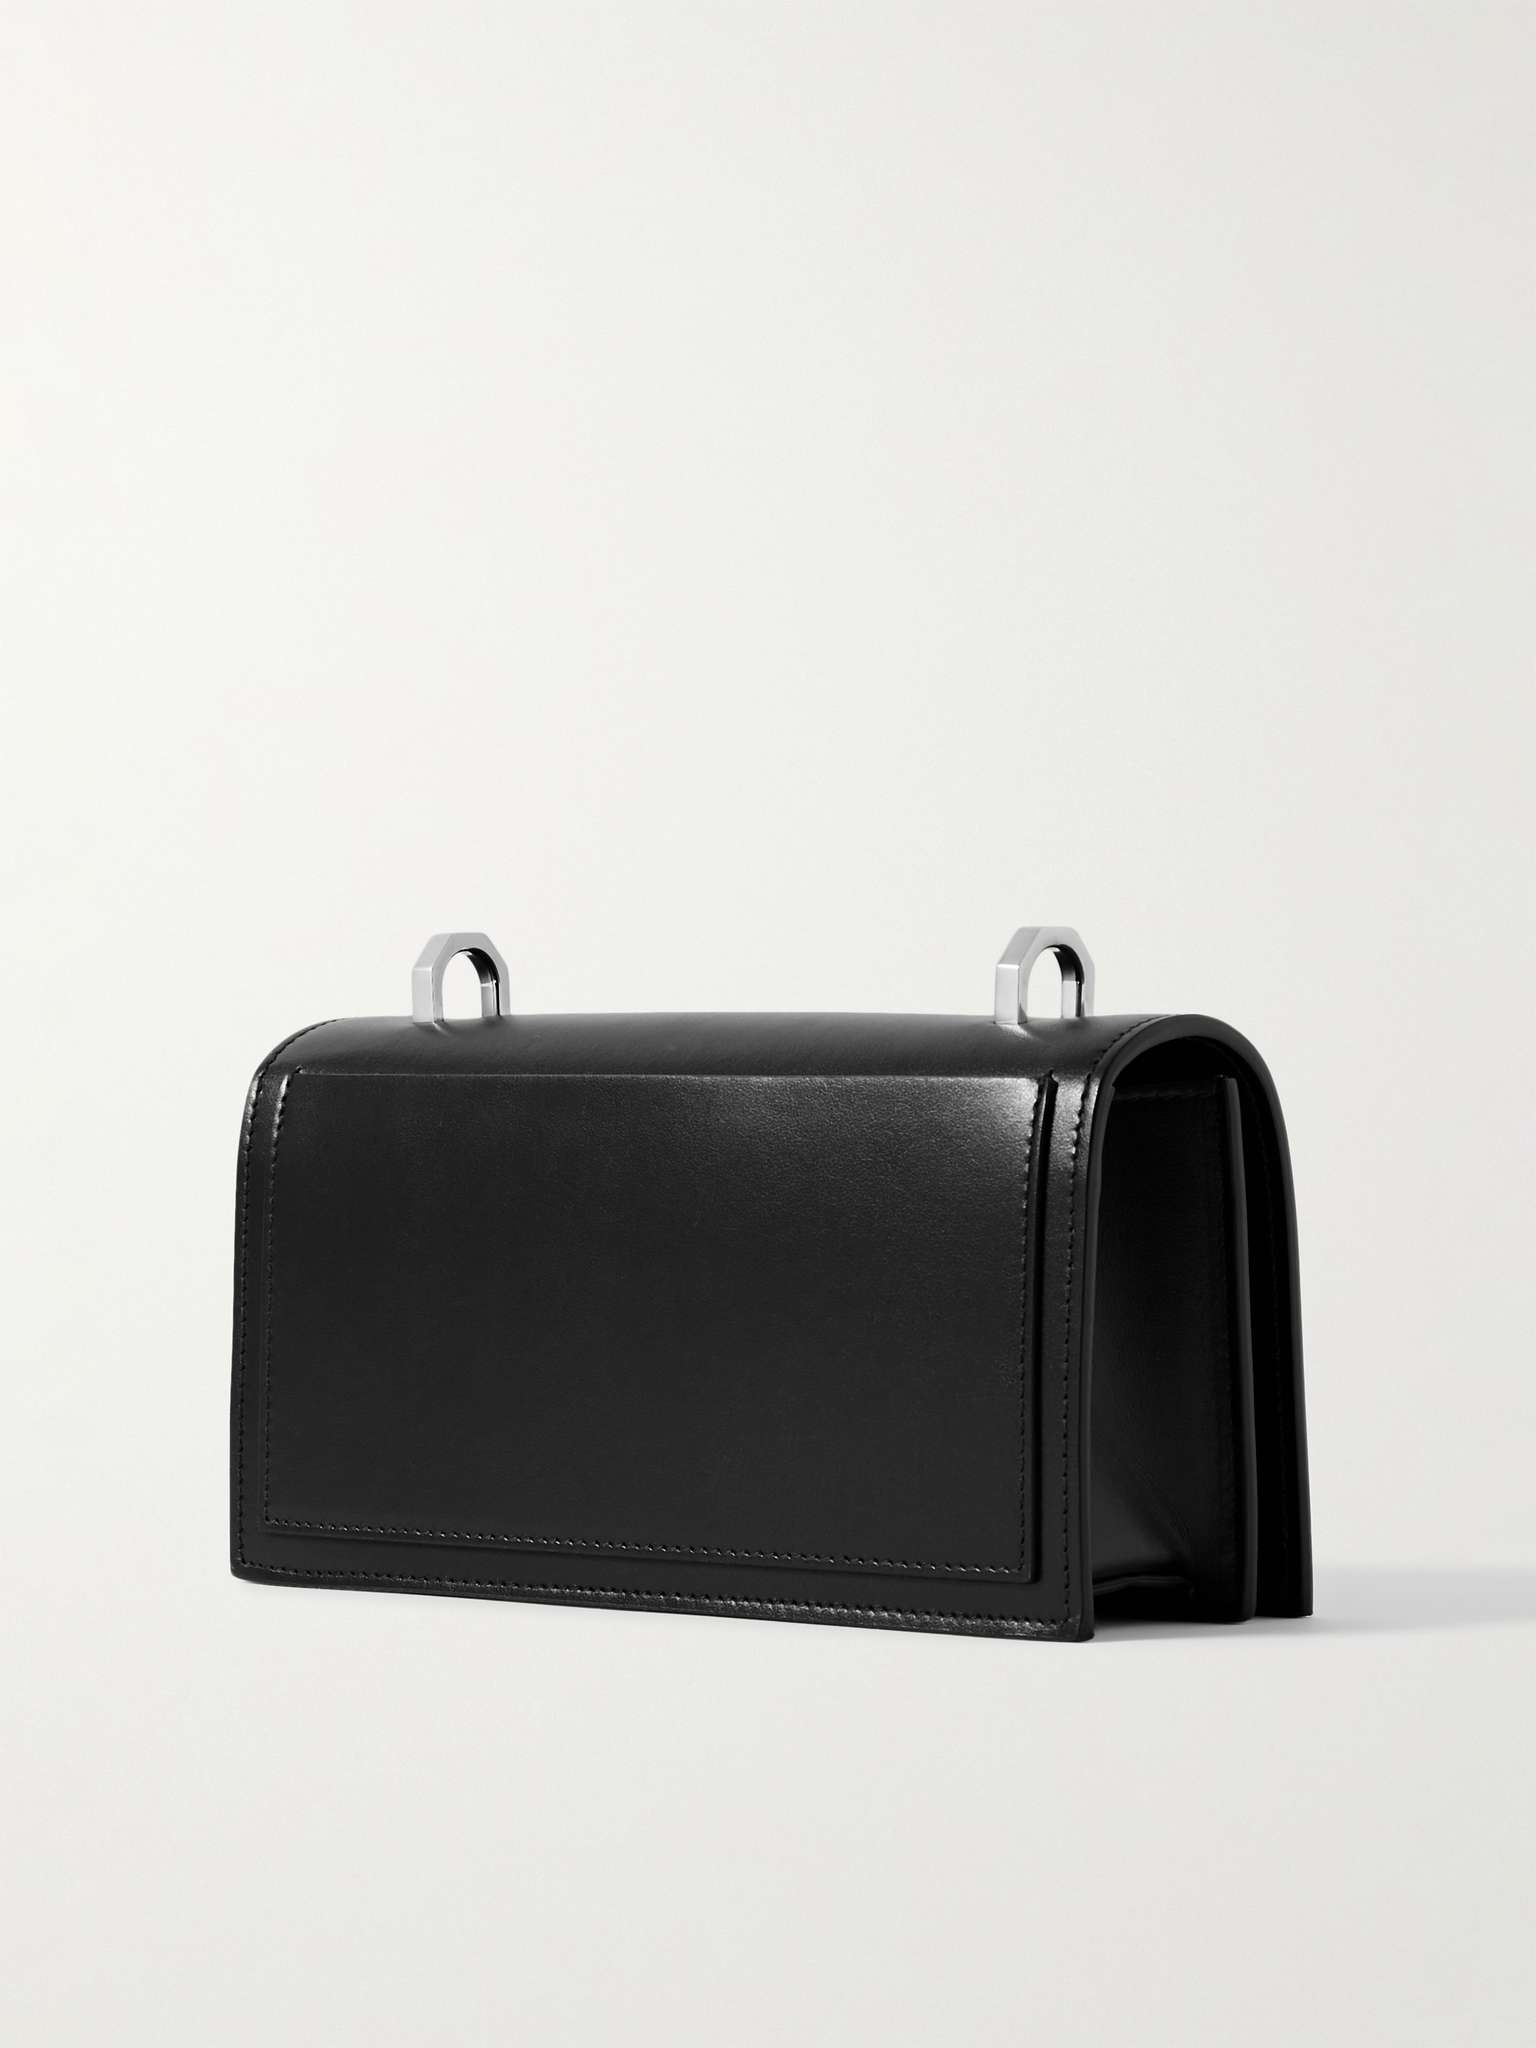 The Knuckle Embellished Leather Messenger Bag - 4